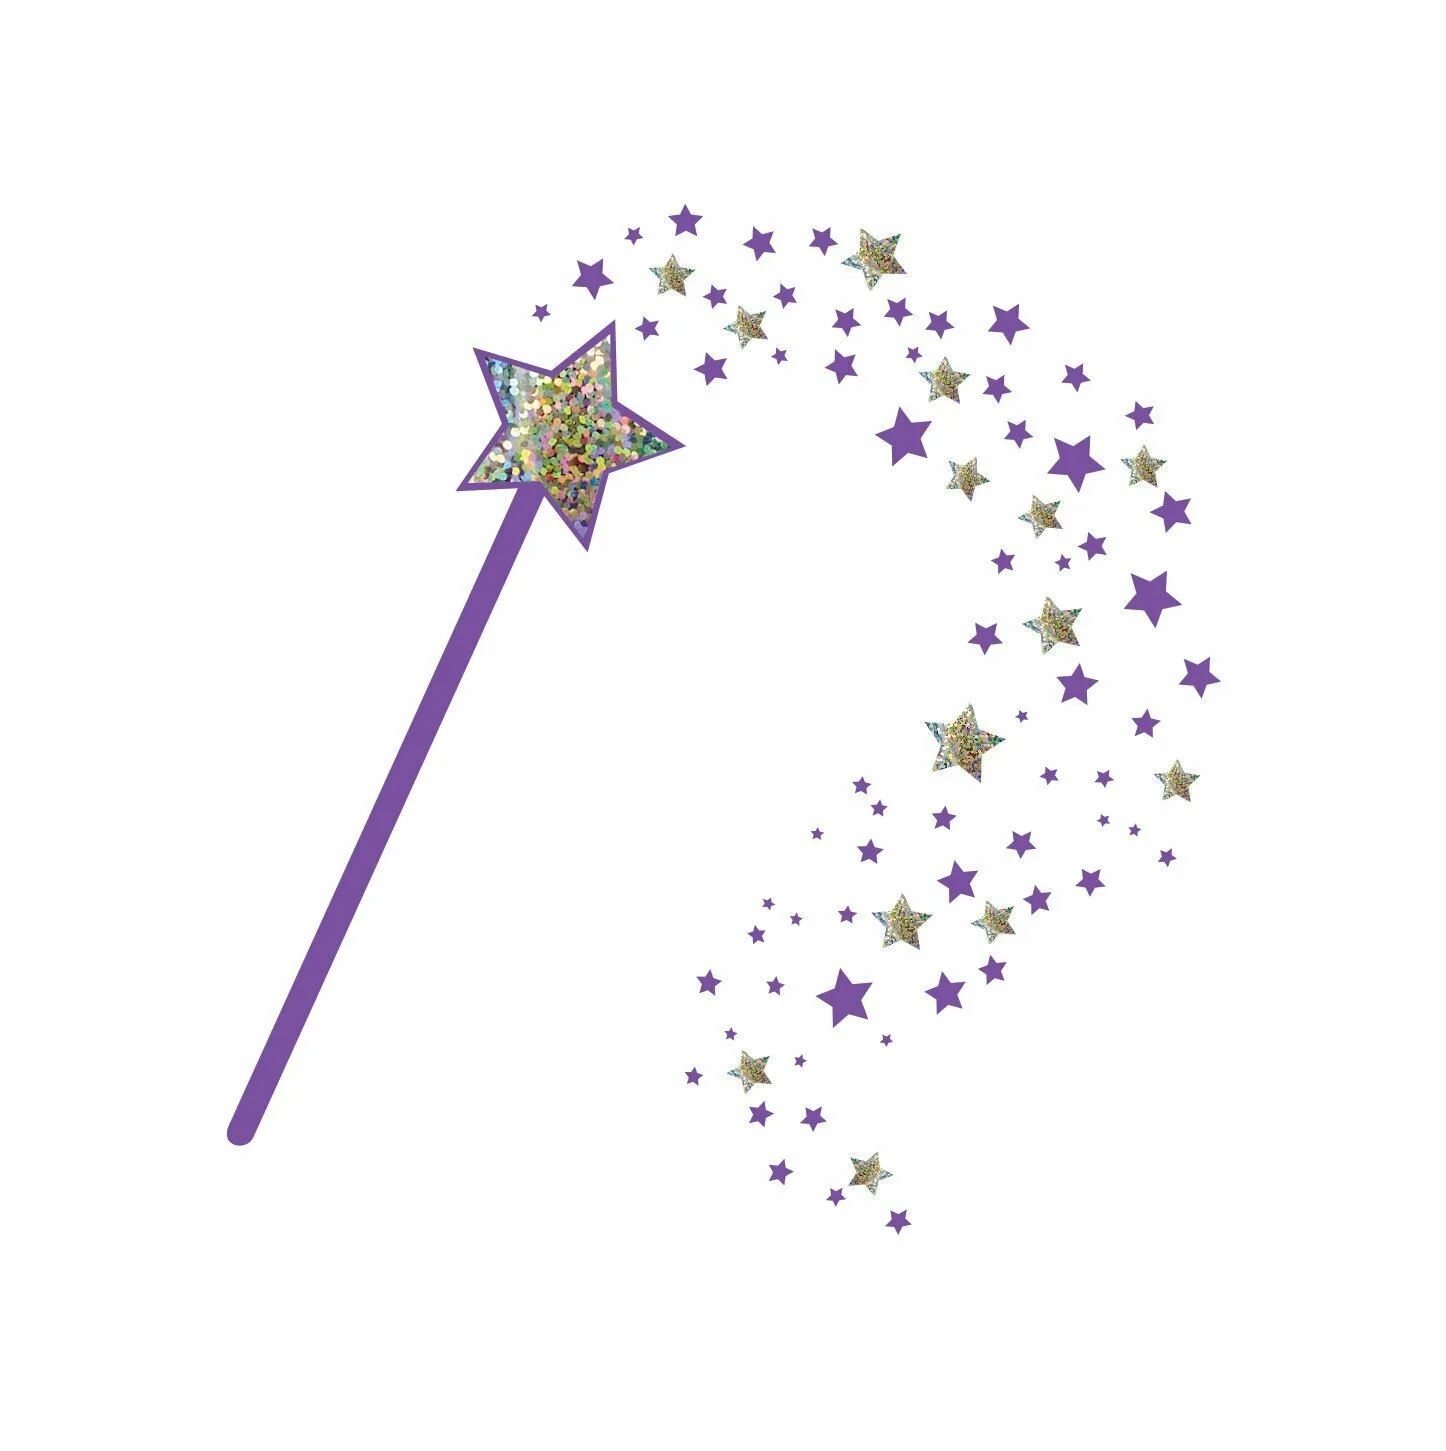 Magic wand перевод. Волшебный палочка Magic Wand. Фея с волшебной палочкой. Фея с палочкой. Волшебная палочка картинка для детей.